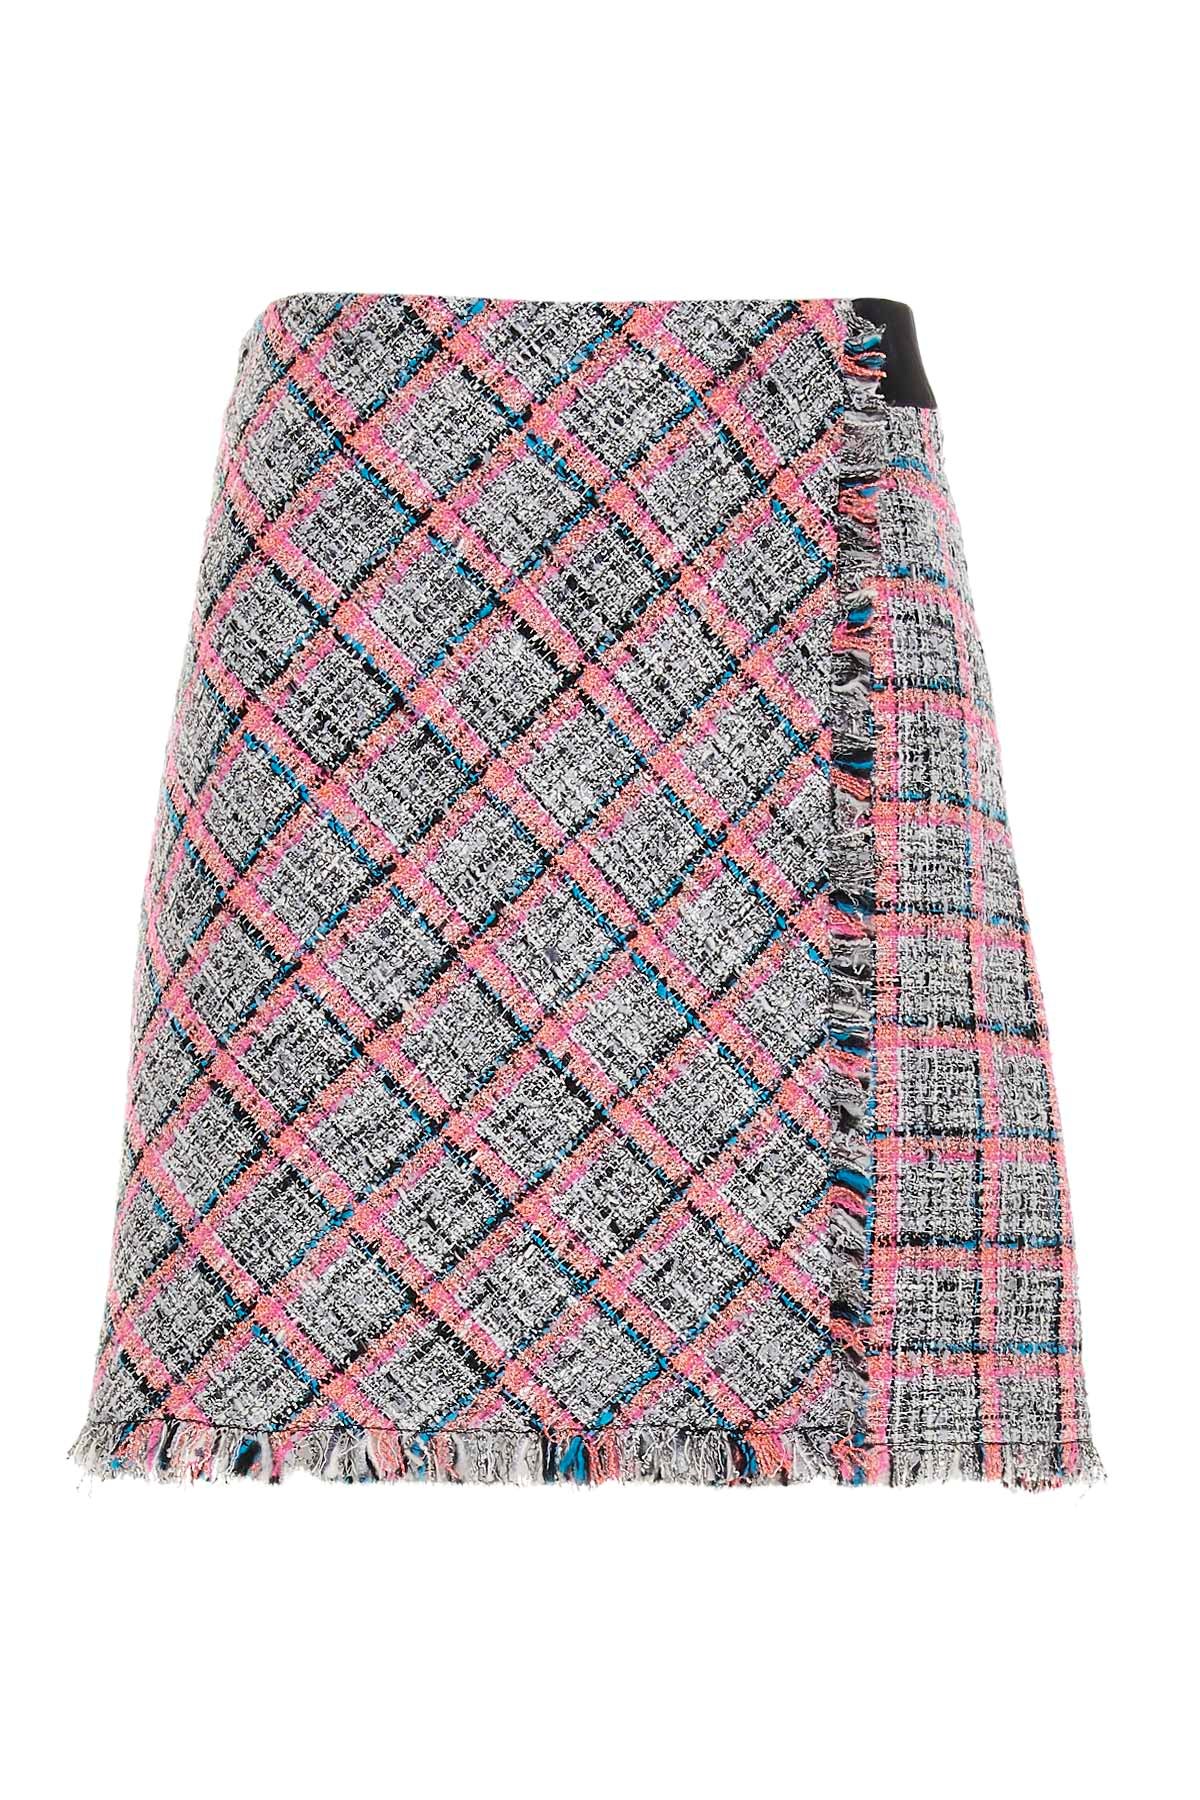 KARL LAGERFELD Tweed Skirt